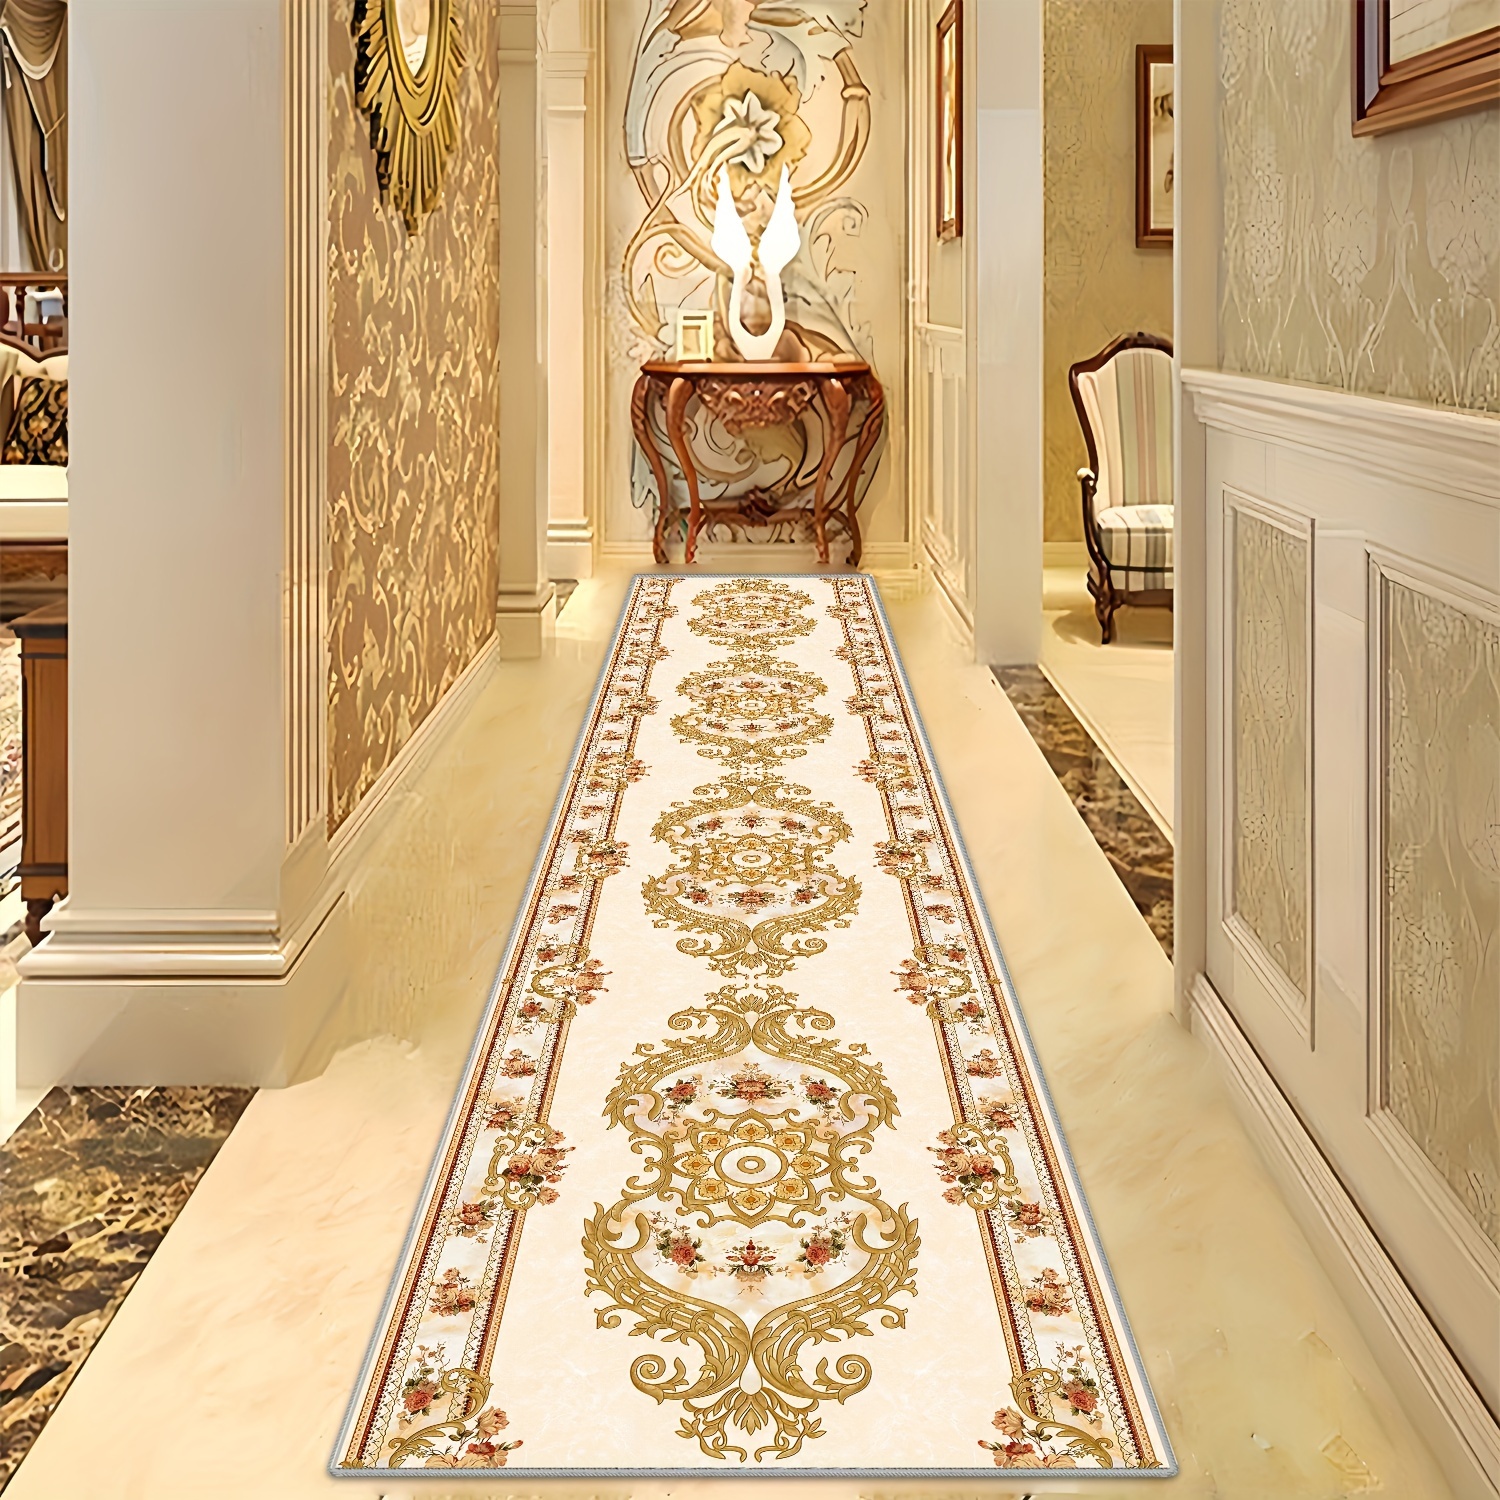 

1pc Crystal Velvet Runner Carpet Or Rug, Non-slip Backing, Modern Luxurious Long Carpet For Corridor, Easy Care, Suitable For Living Room, Sofa, Bedroom, Study, Hallway Mat